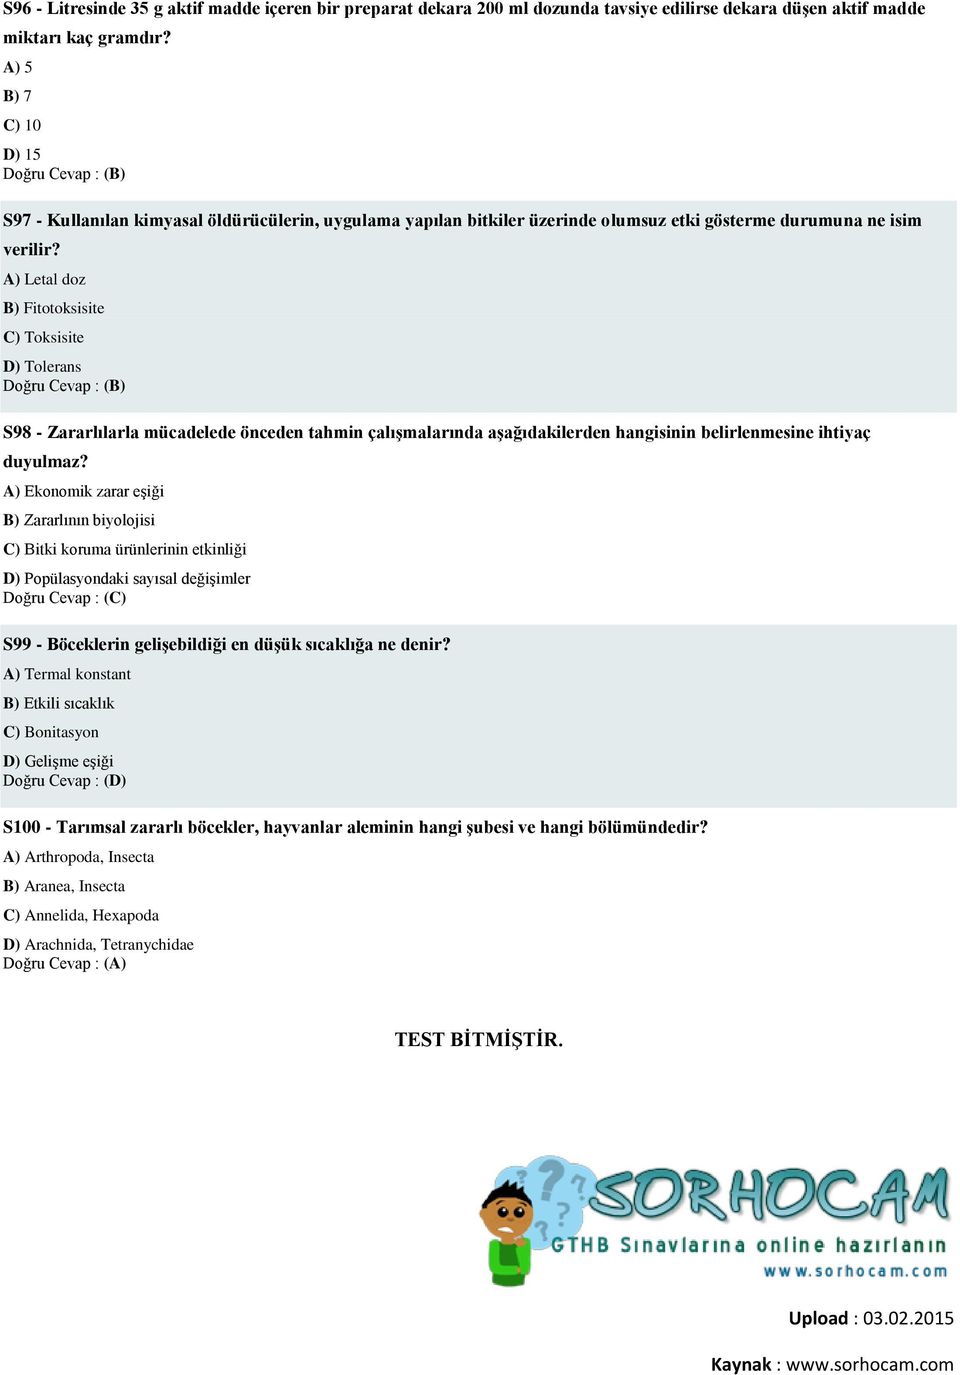 A) Letal doz B) Fitotoksisite C) Toksisite D) Tolerans S98 - Zararlılarla mücadelede önceden tahmin çalışmalarında aşağıdakilerden hangisinin belirlenmesine ihtiyaç duyulmaz?